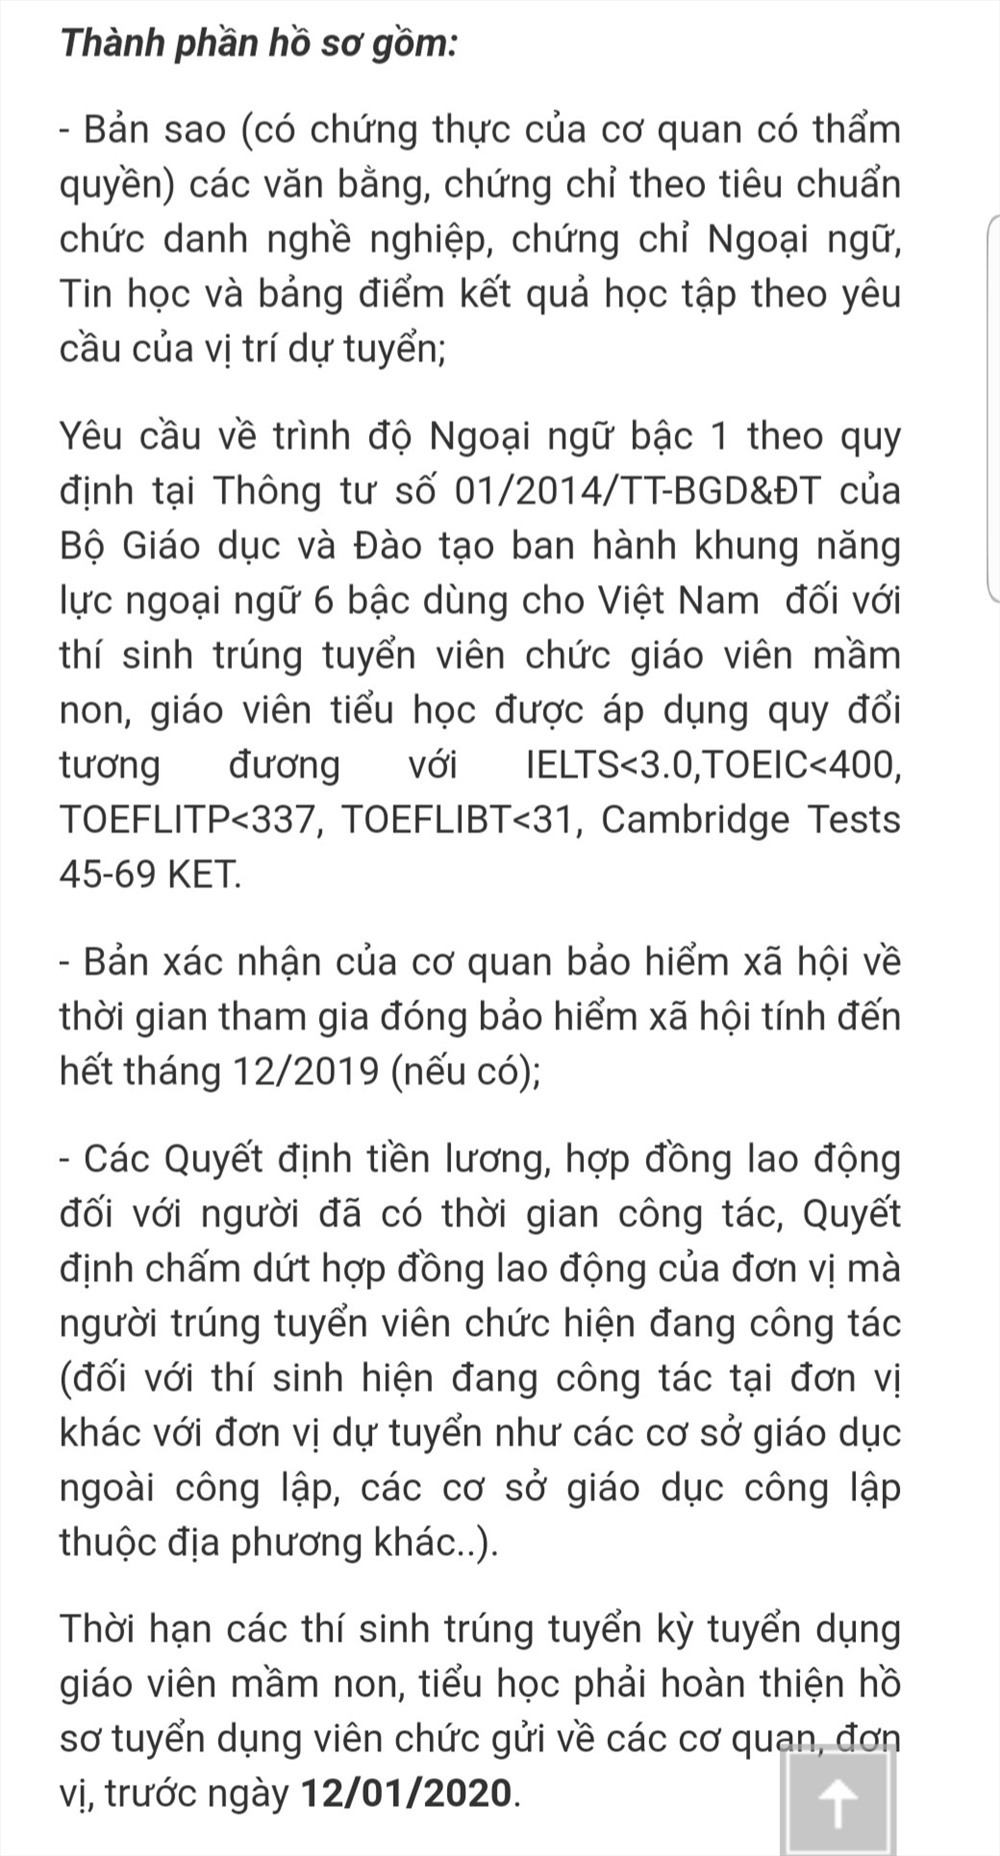 Thông báo của Sở Nội vụ Quảng Ninh về những giấy tờ, chứng chỉ cần nộp để hoàn thiện hồ sơ đối với các giáo viên mầm non vừa đỗ thi viên chức